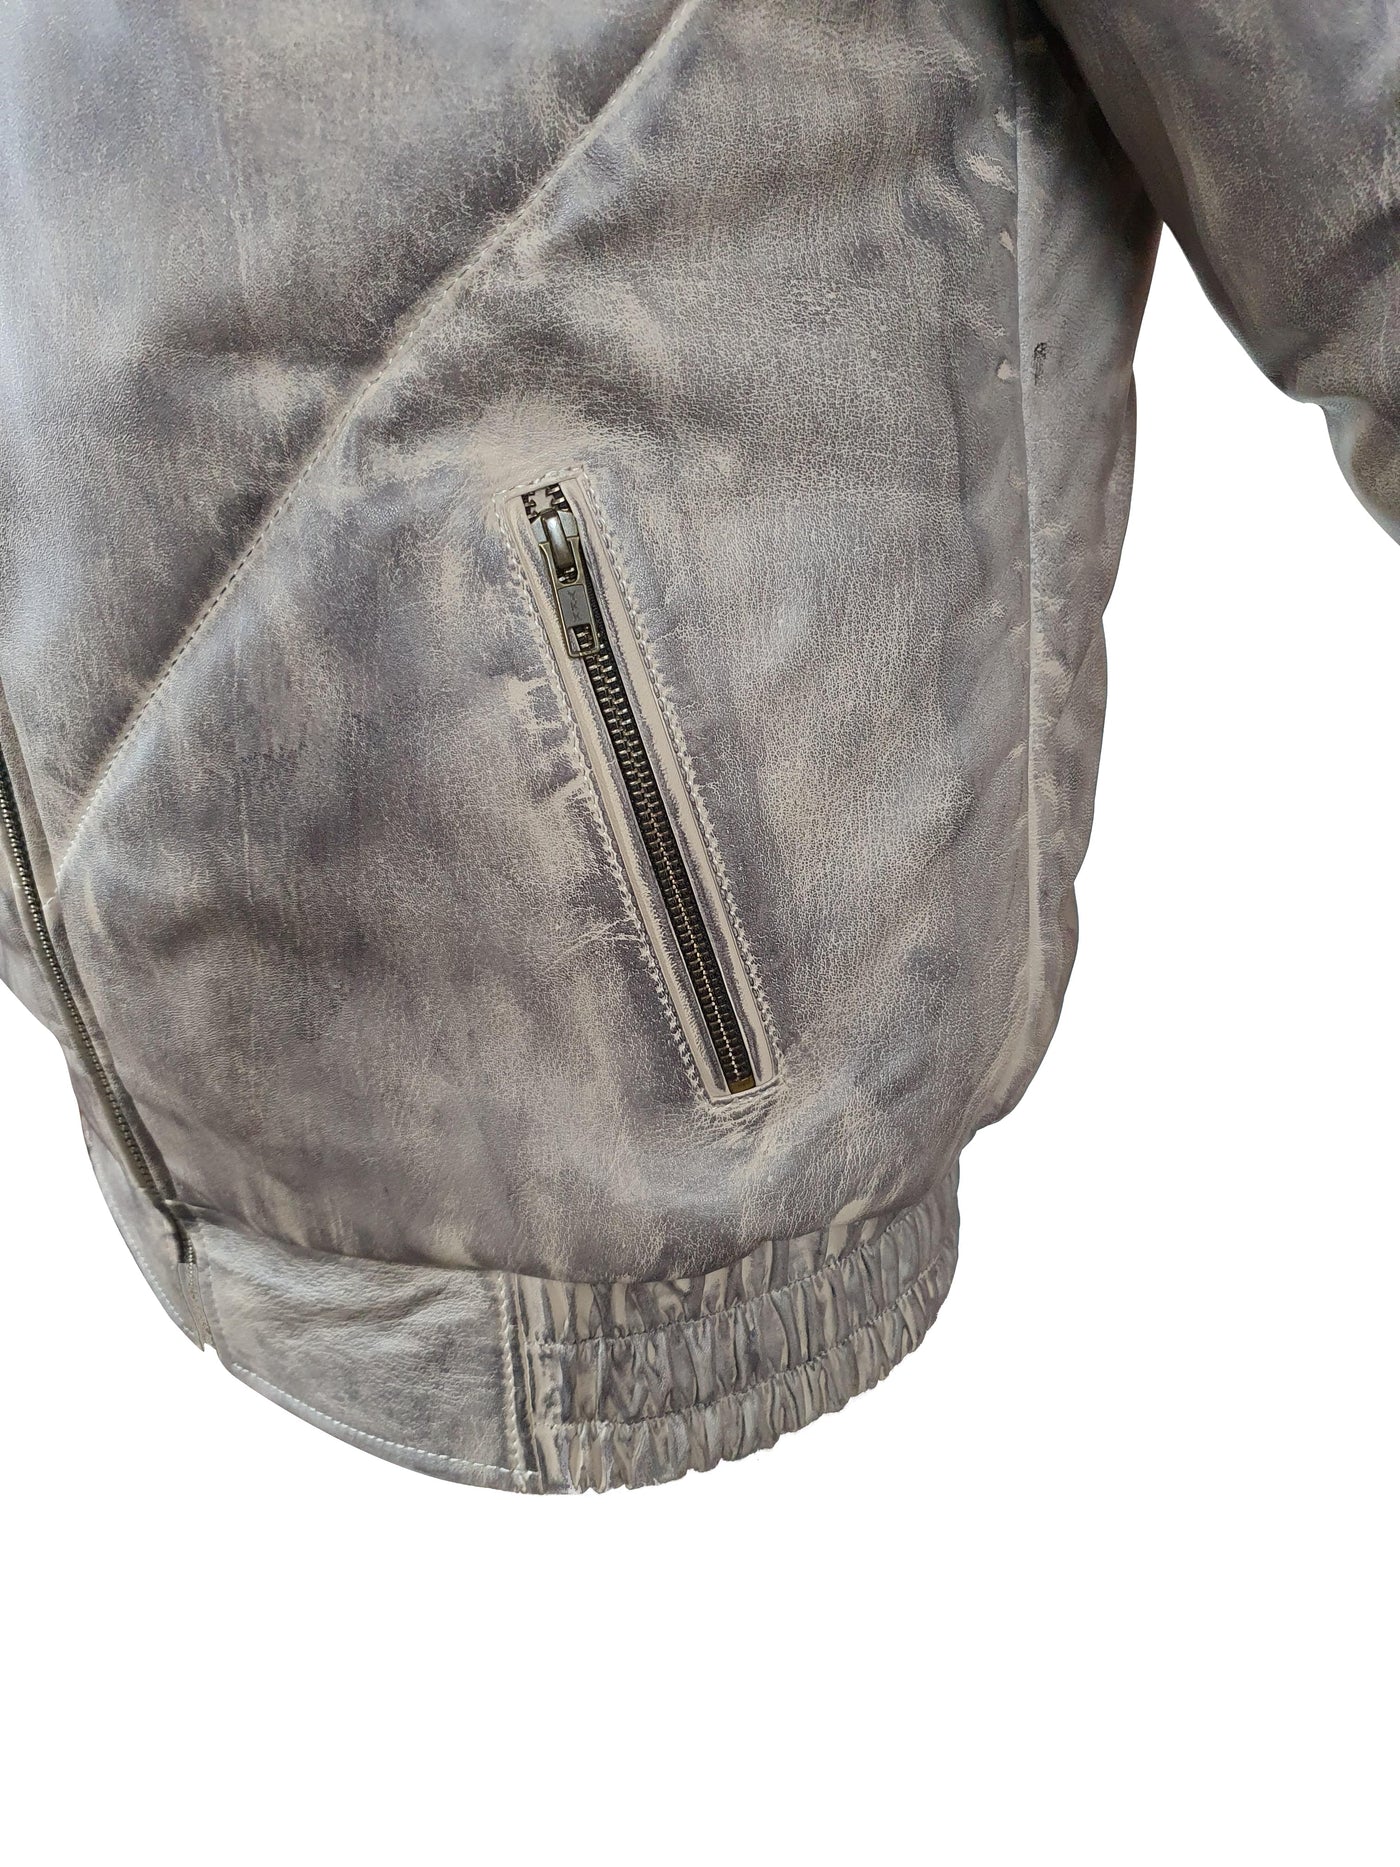 Casper's V-Bomber-style Puffer Winter Leather Jacket